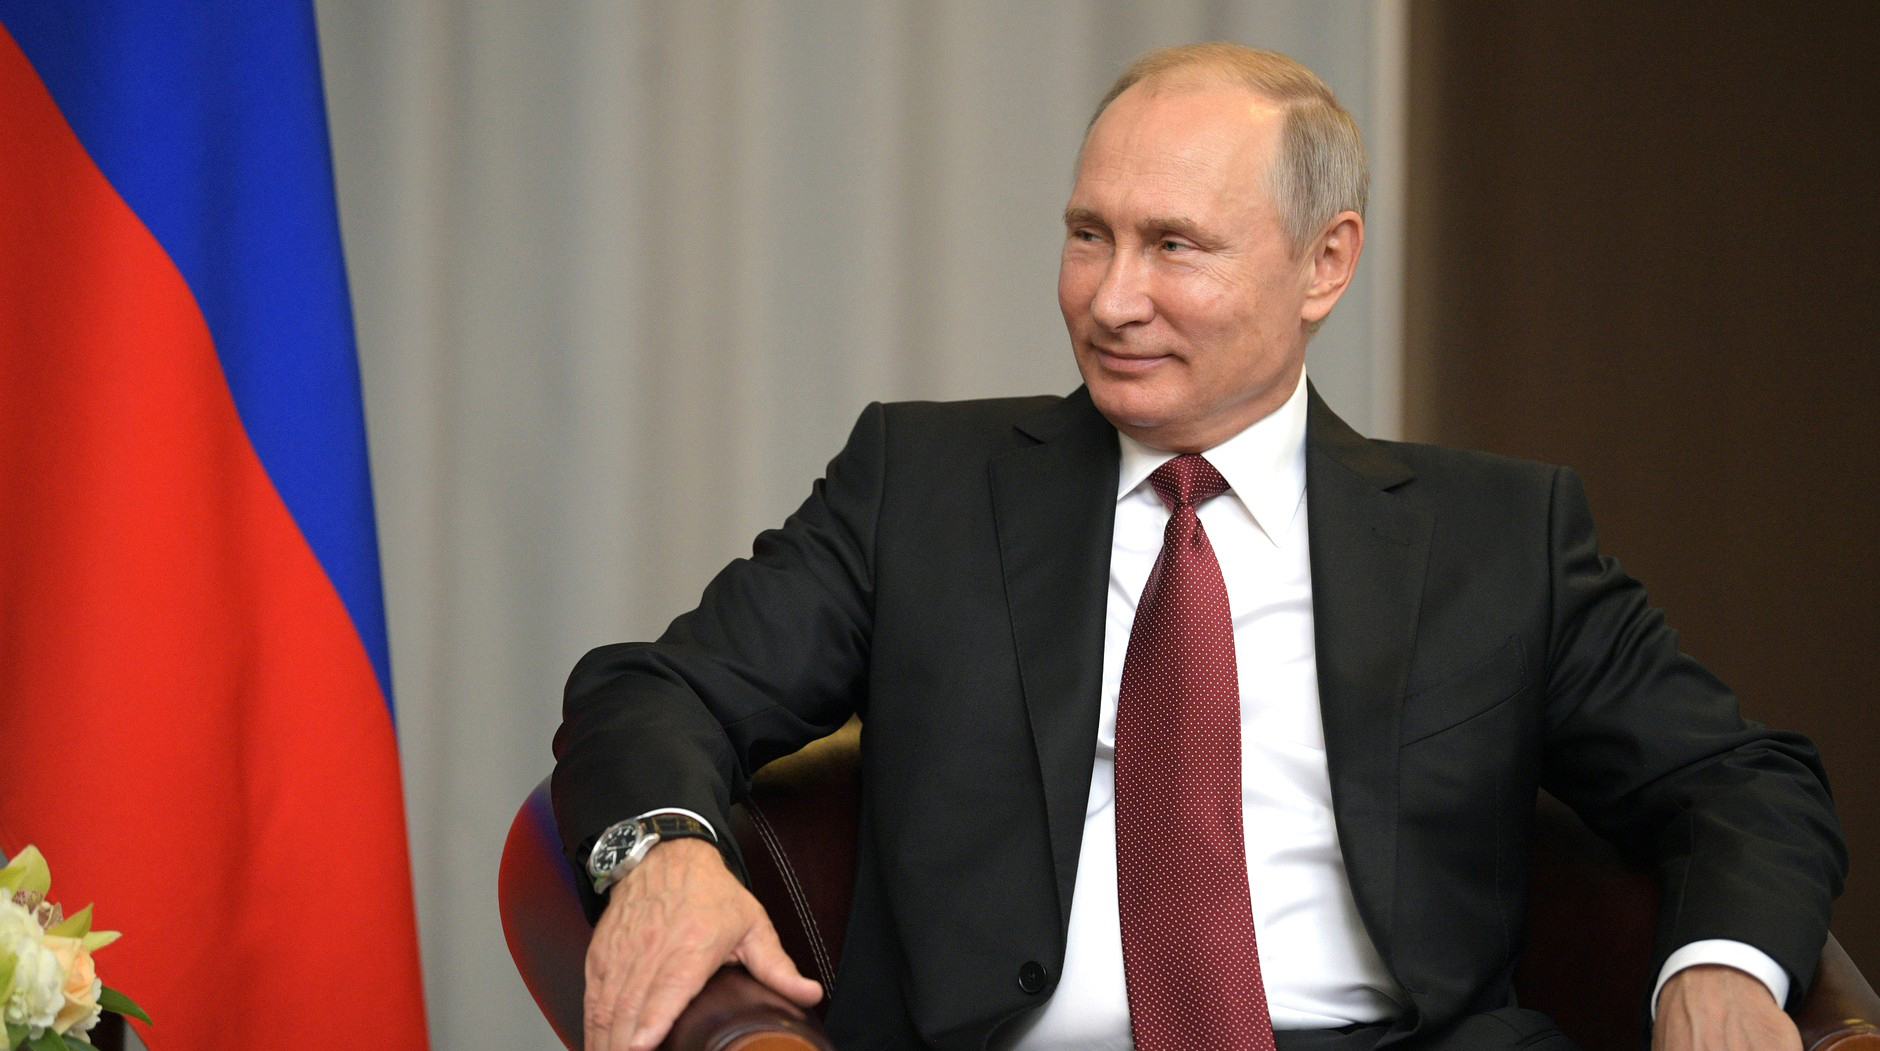 К заявлению лидеров стран СНГ смогут присоединиться и представители других государств Фото: © GLOBAL LOOK press/Kremlin Pool